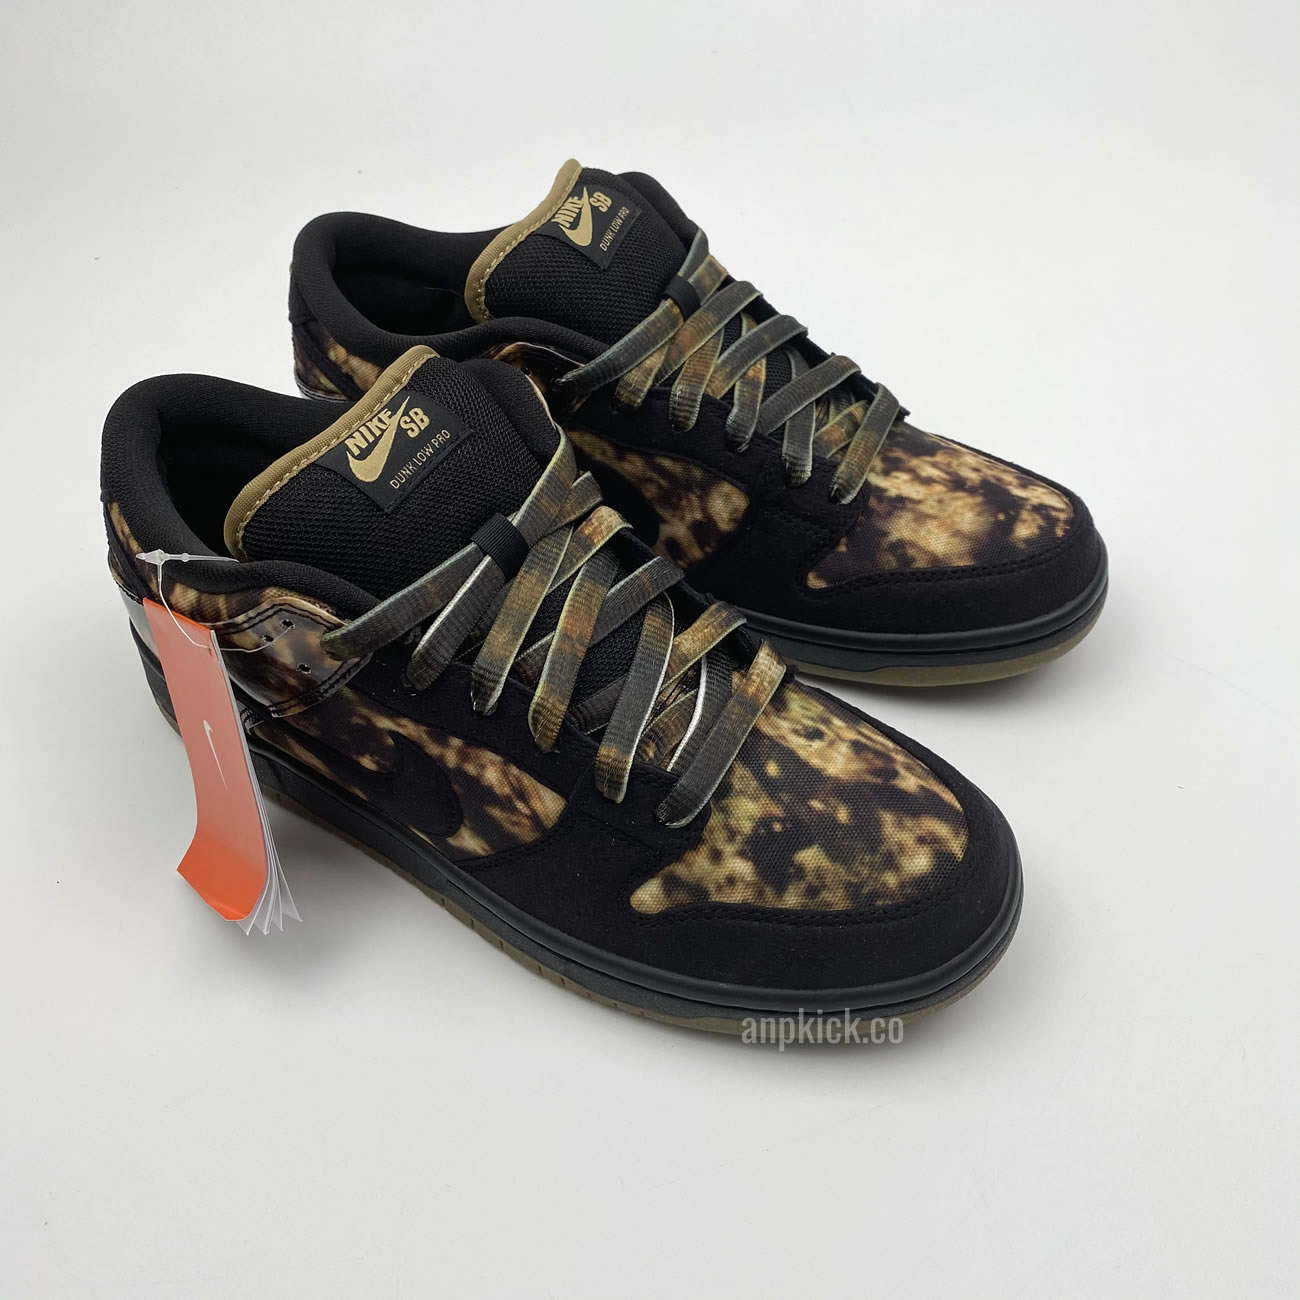 Nike SB Dunk Low Premium "Pushead 2" 536356-002 Release Date